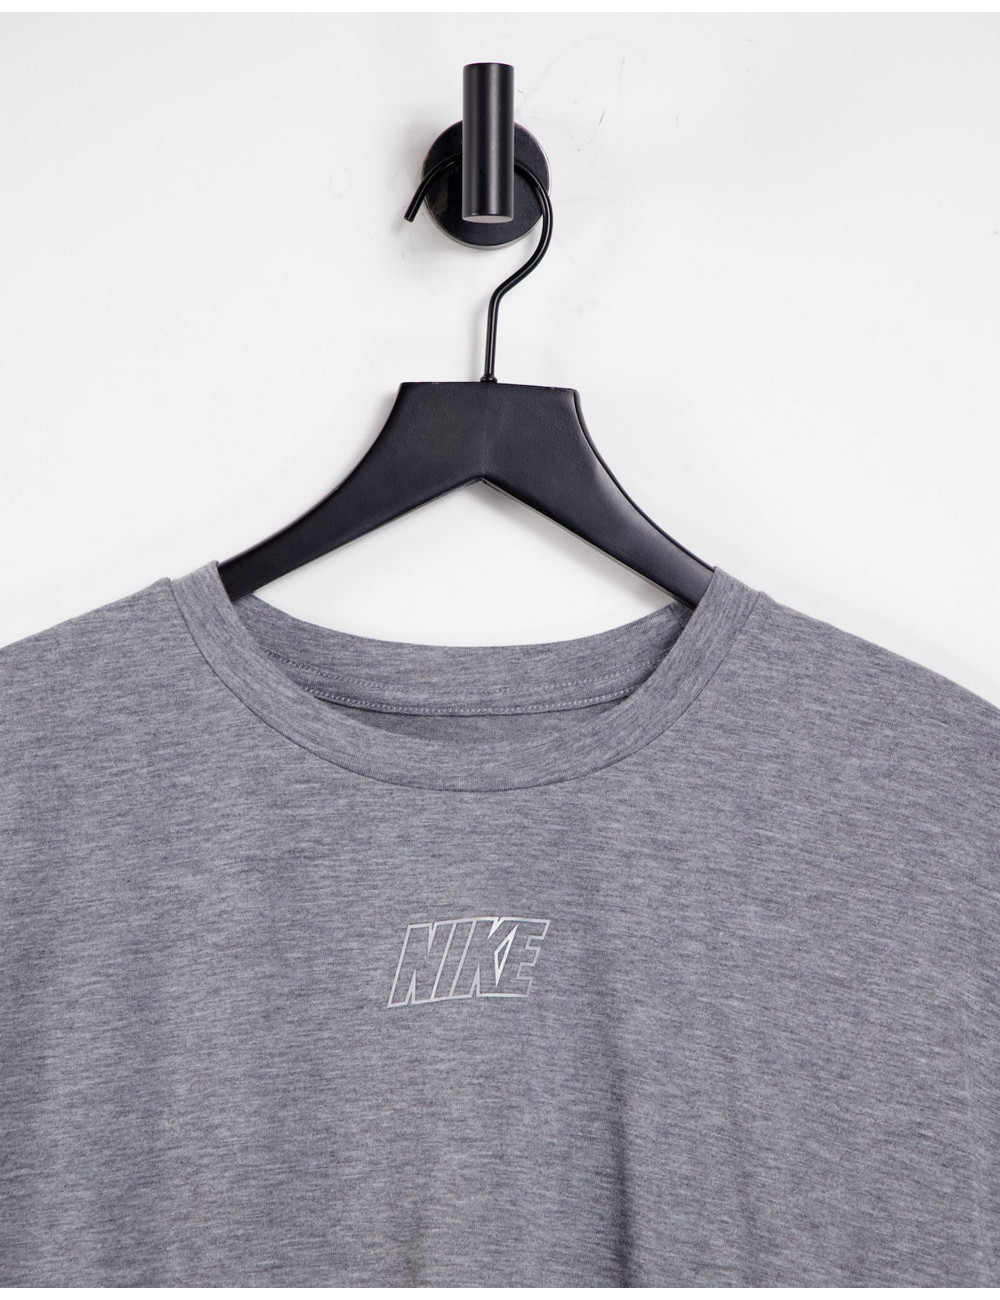 Nike Dry Bottom Tie T-Shirt...